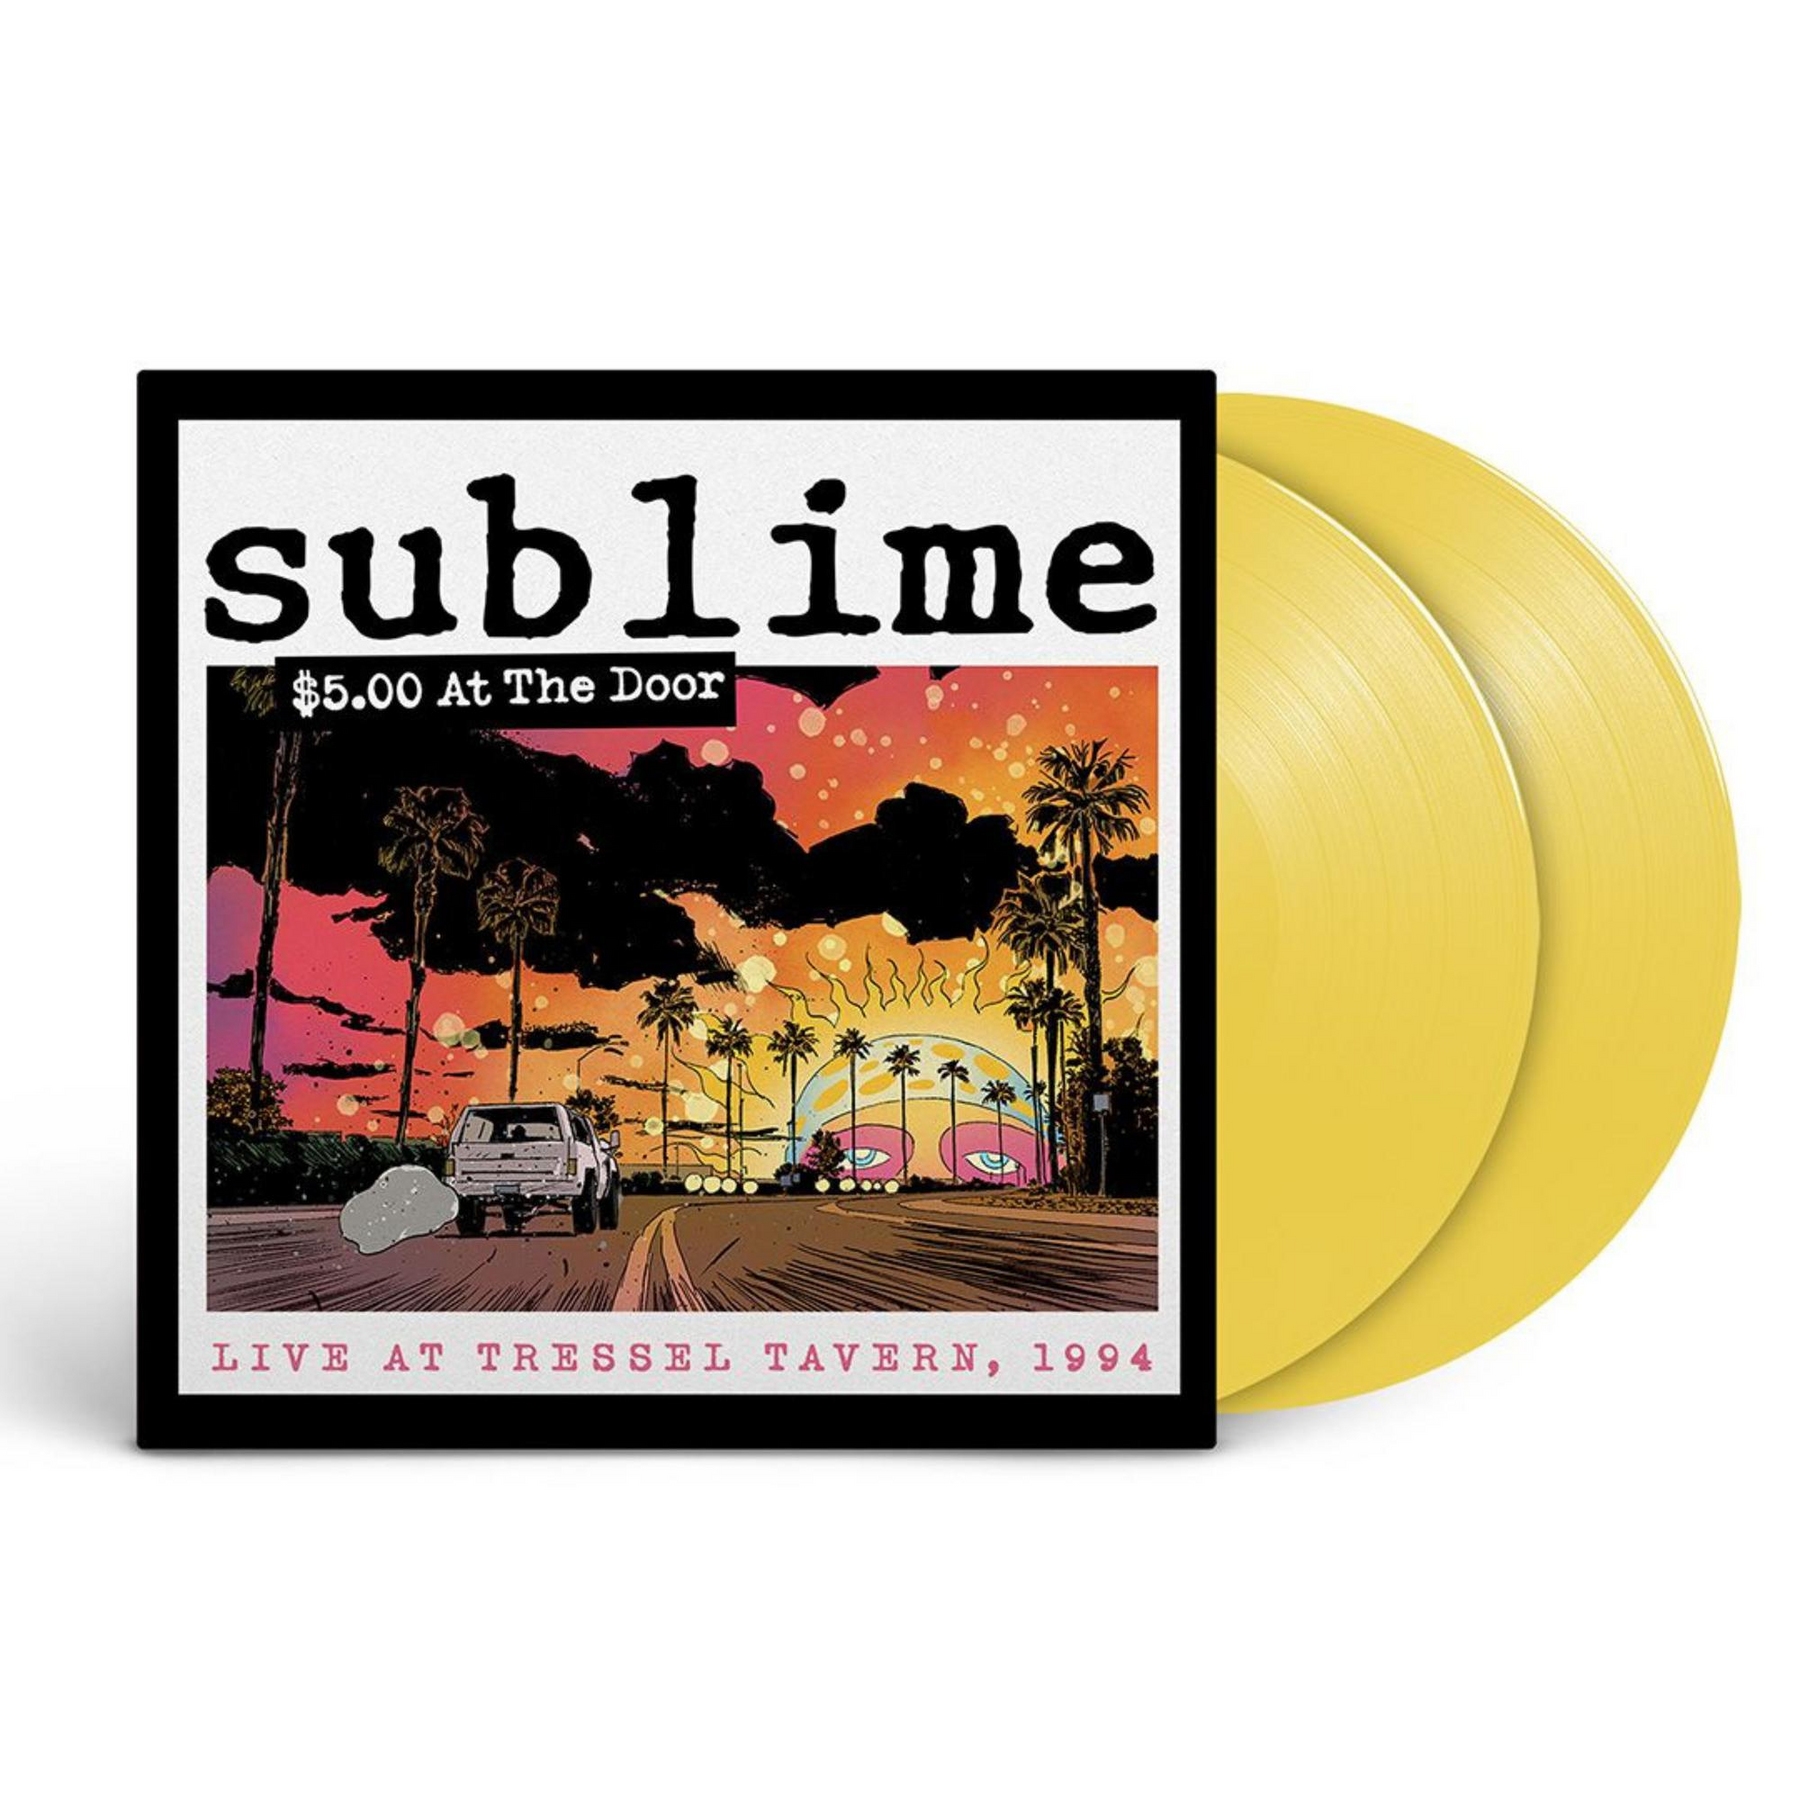 Sublime - $5 At The Door 2LP (Indie Exclusive Yellow Vinyl)